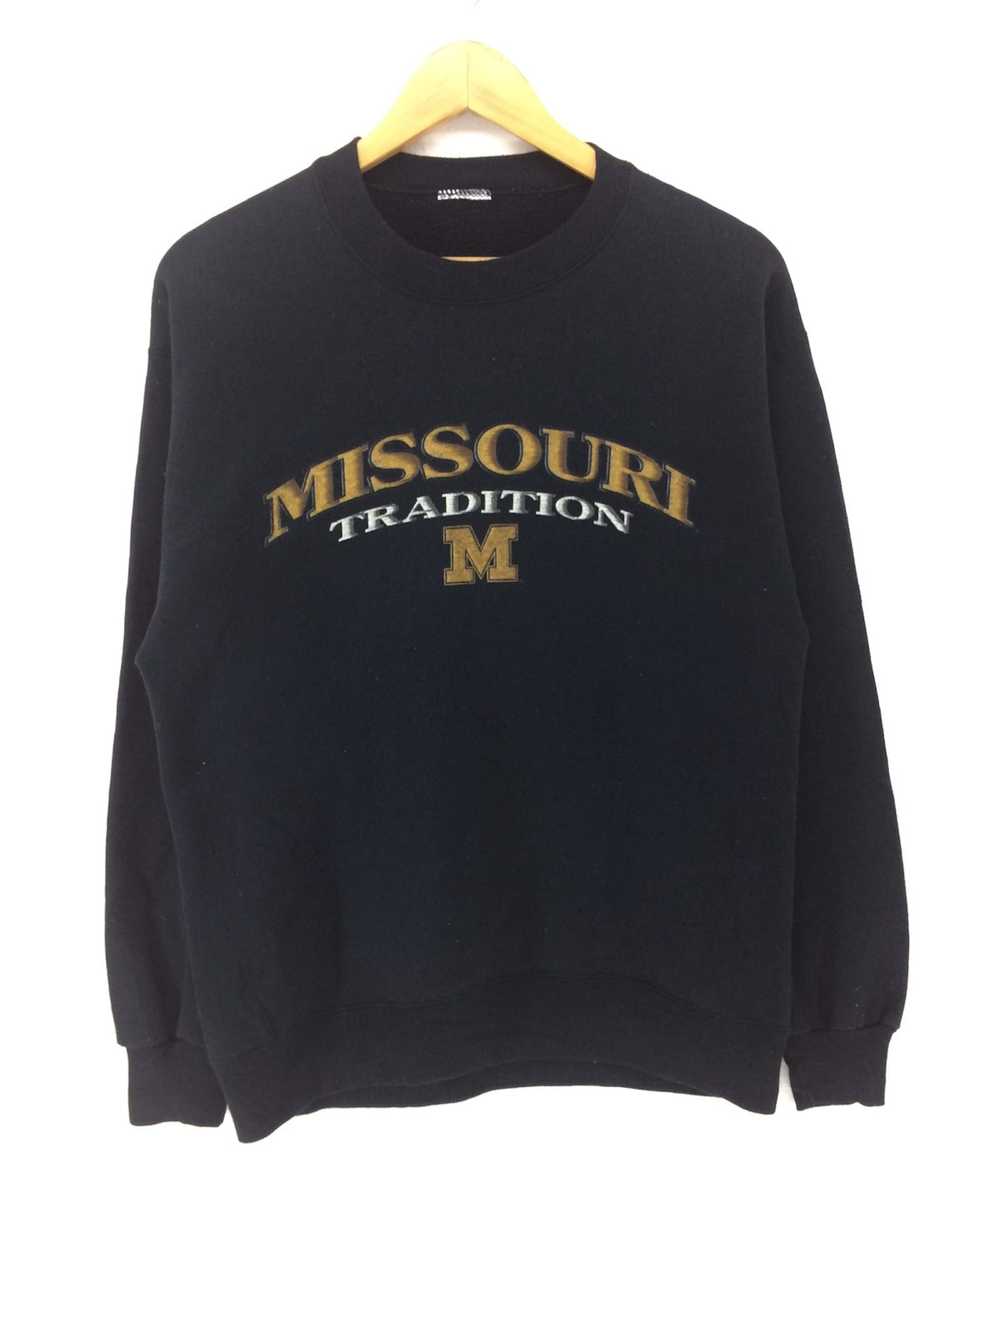 Vintage Vintage Missouri Sweatshirt Fashion Stree… - image 1